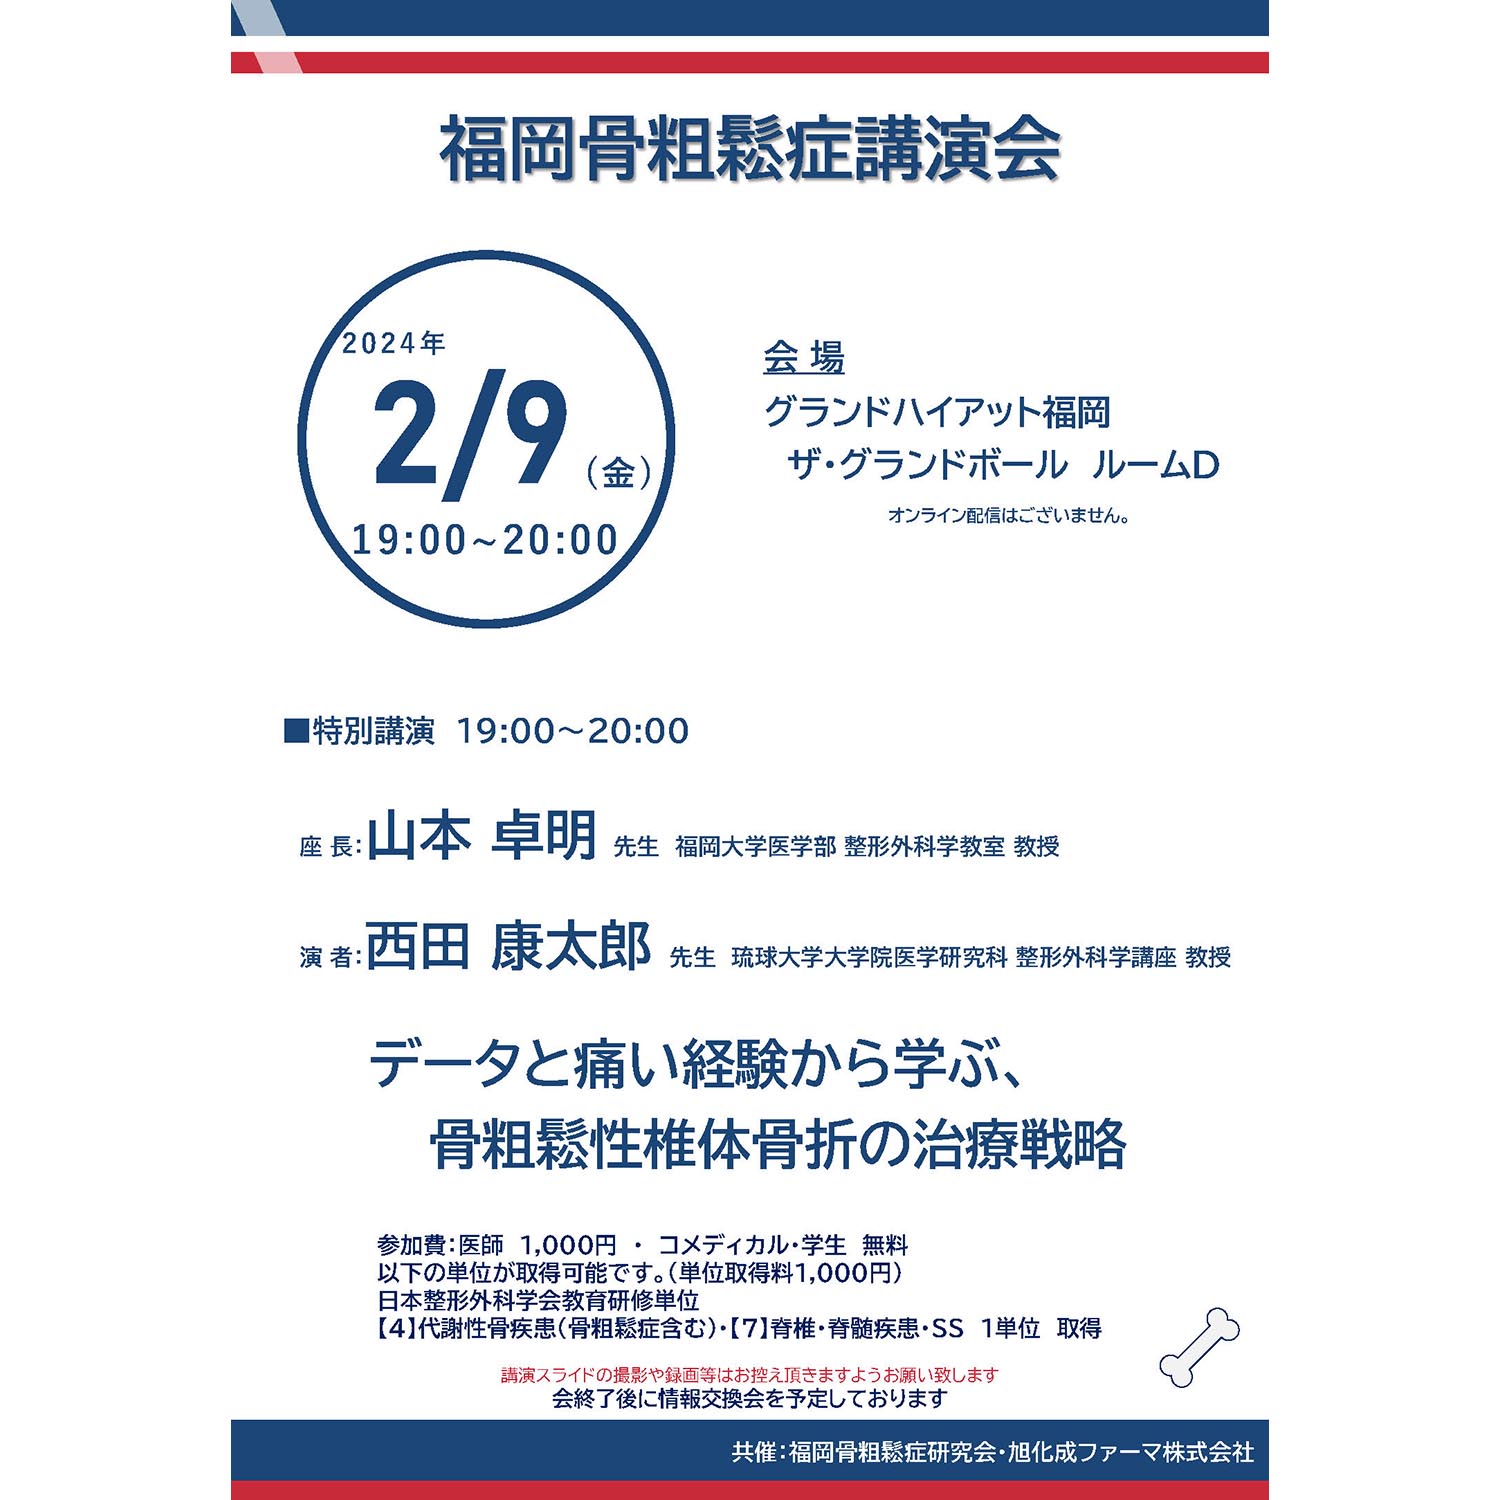 2024年2月月9日(金) 福岡骨粗鬆症講演会を開催いたします。